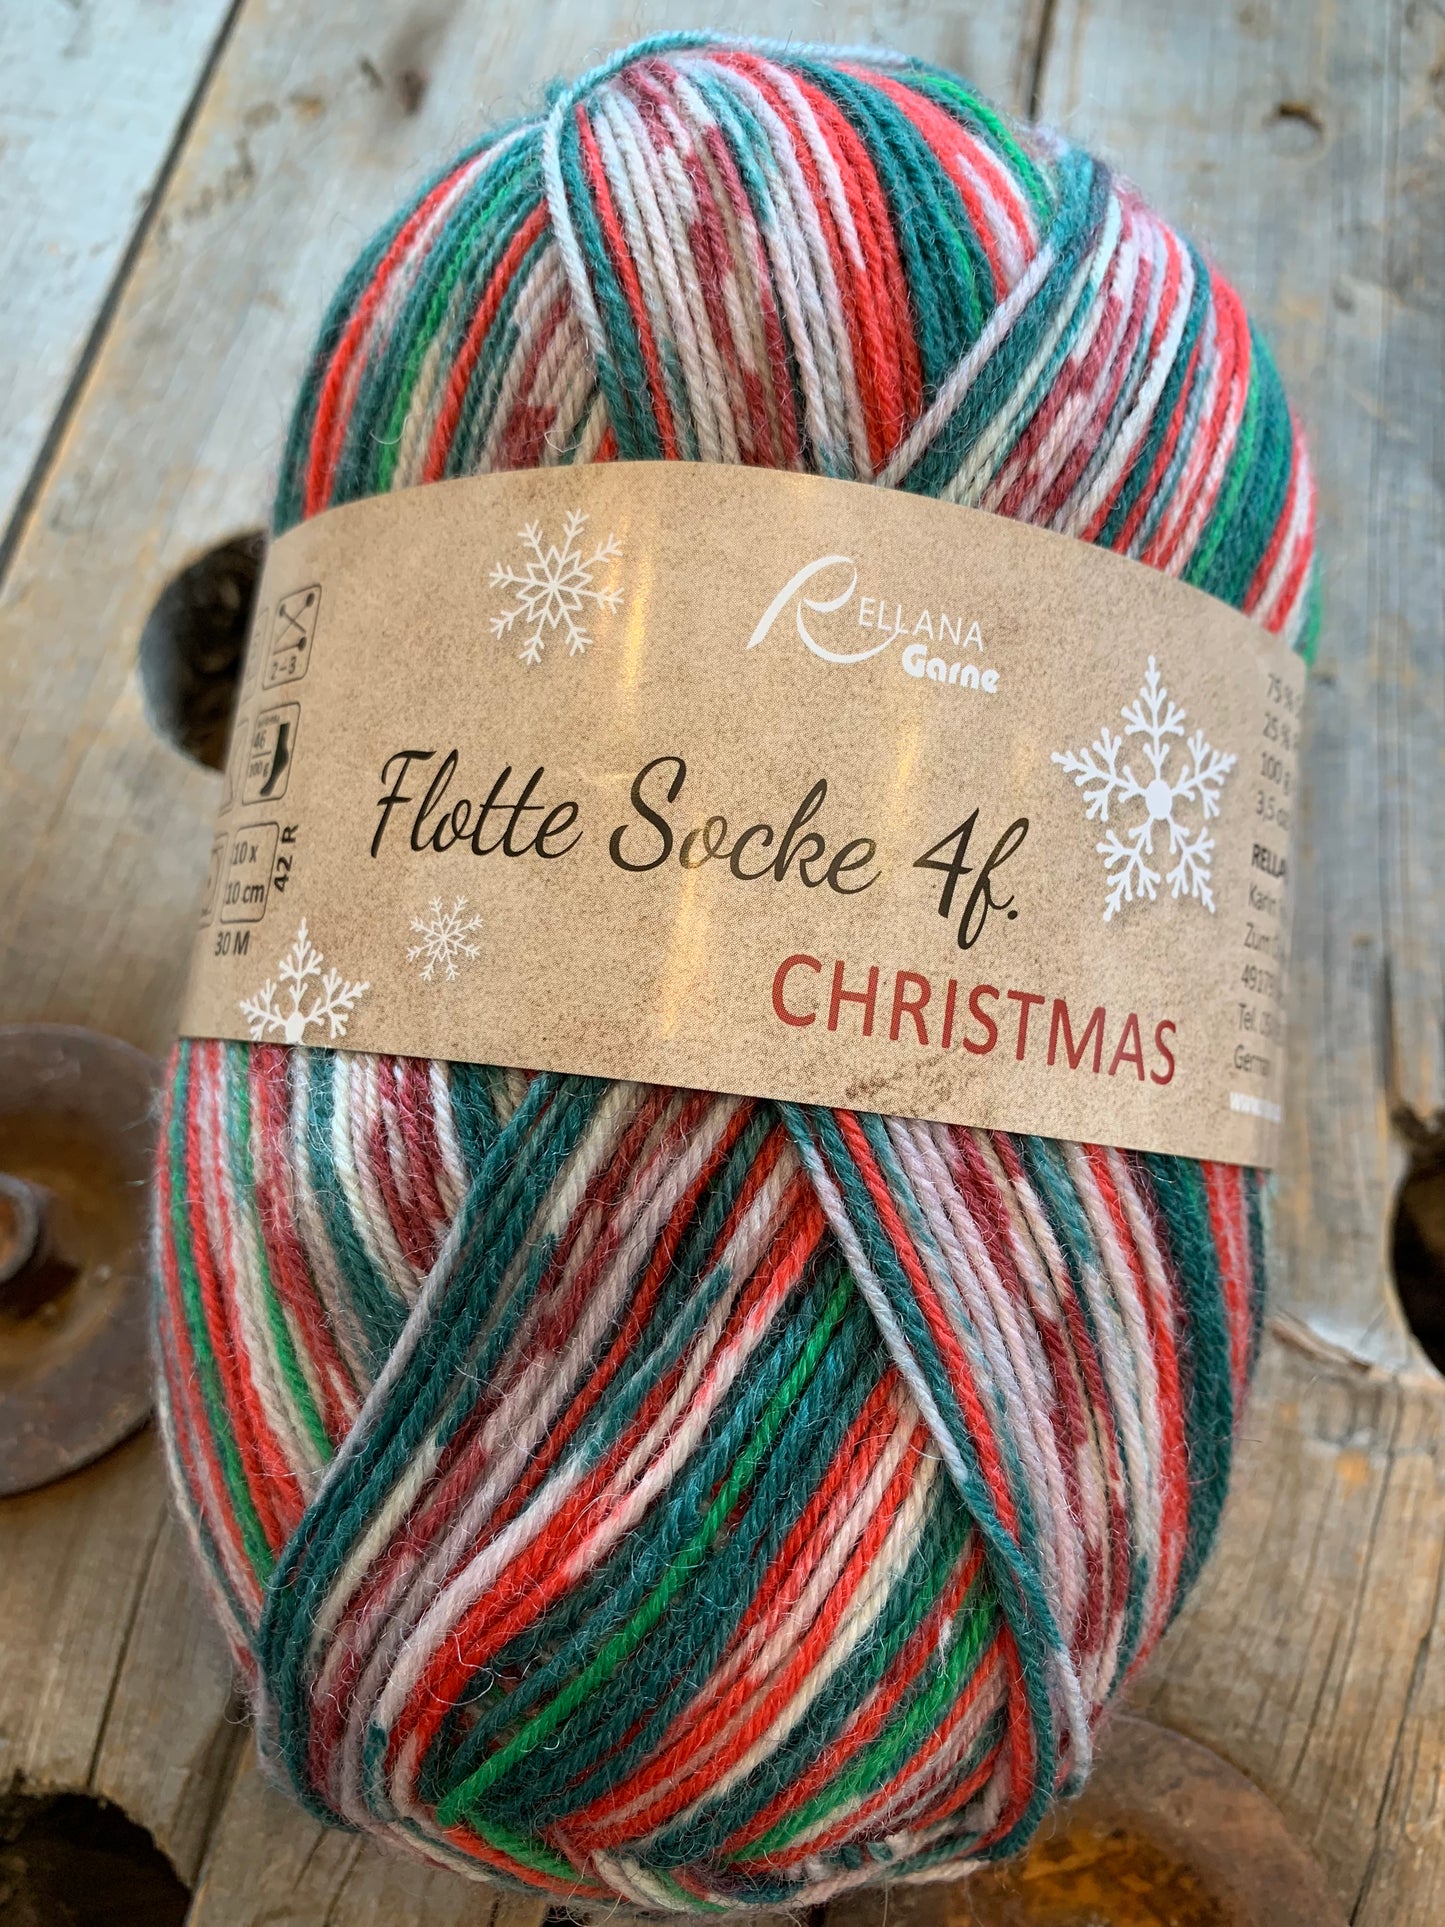 Rellana - Flotte Socke Christmas